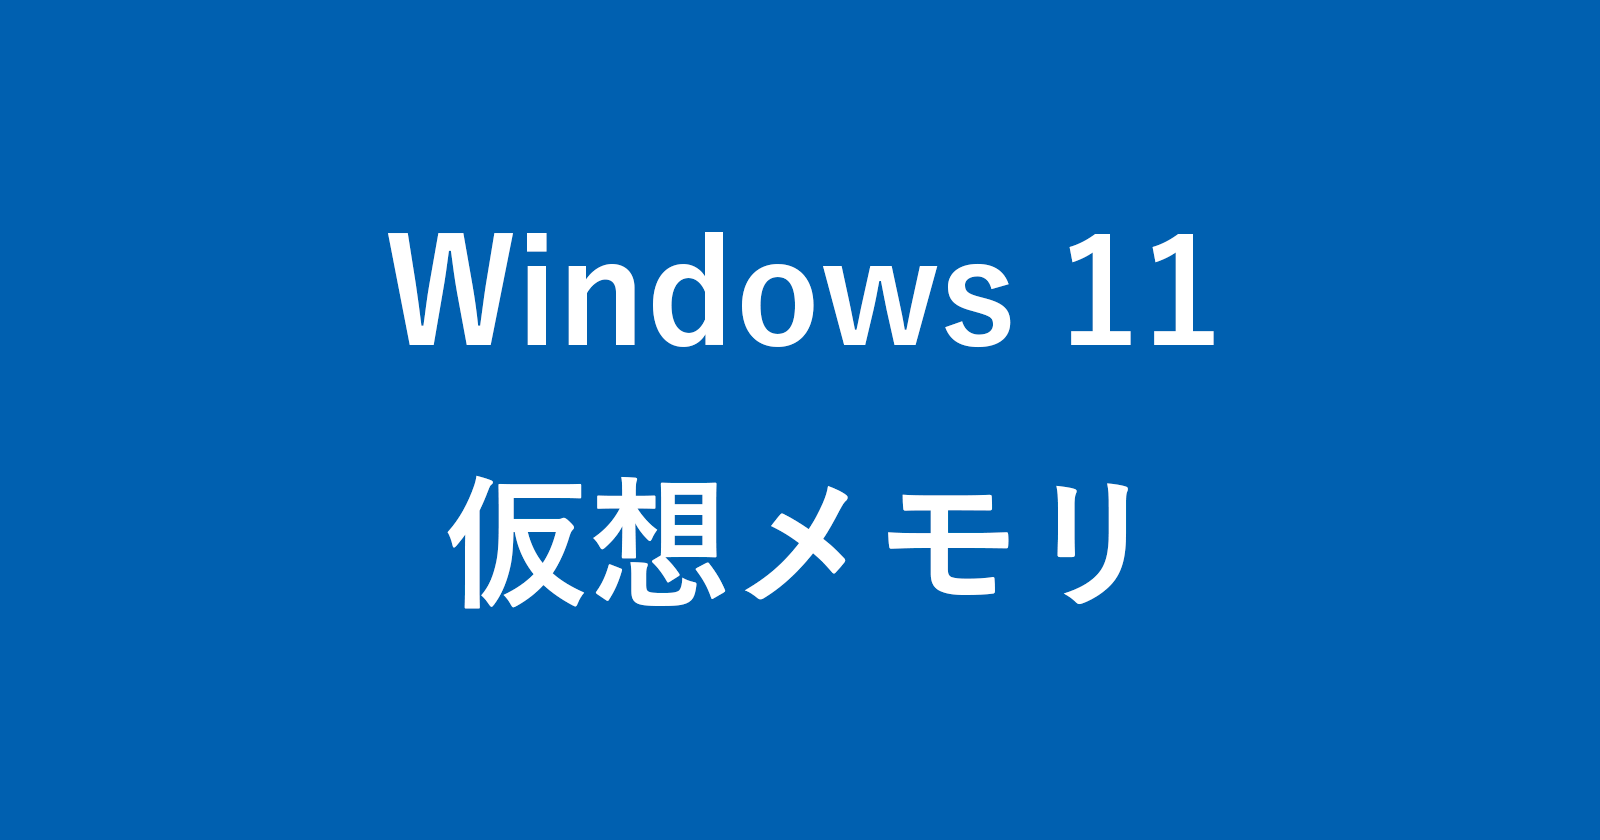 windows 11 virtual memory